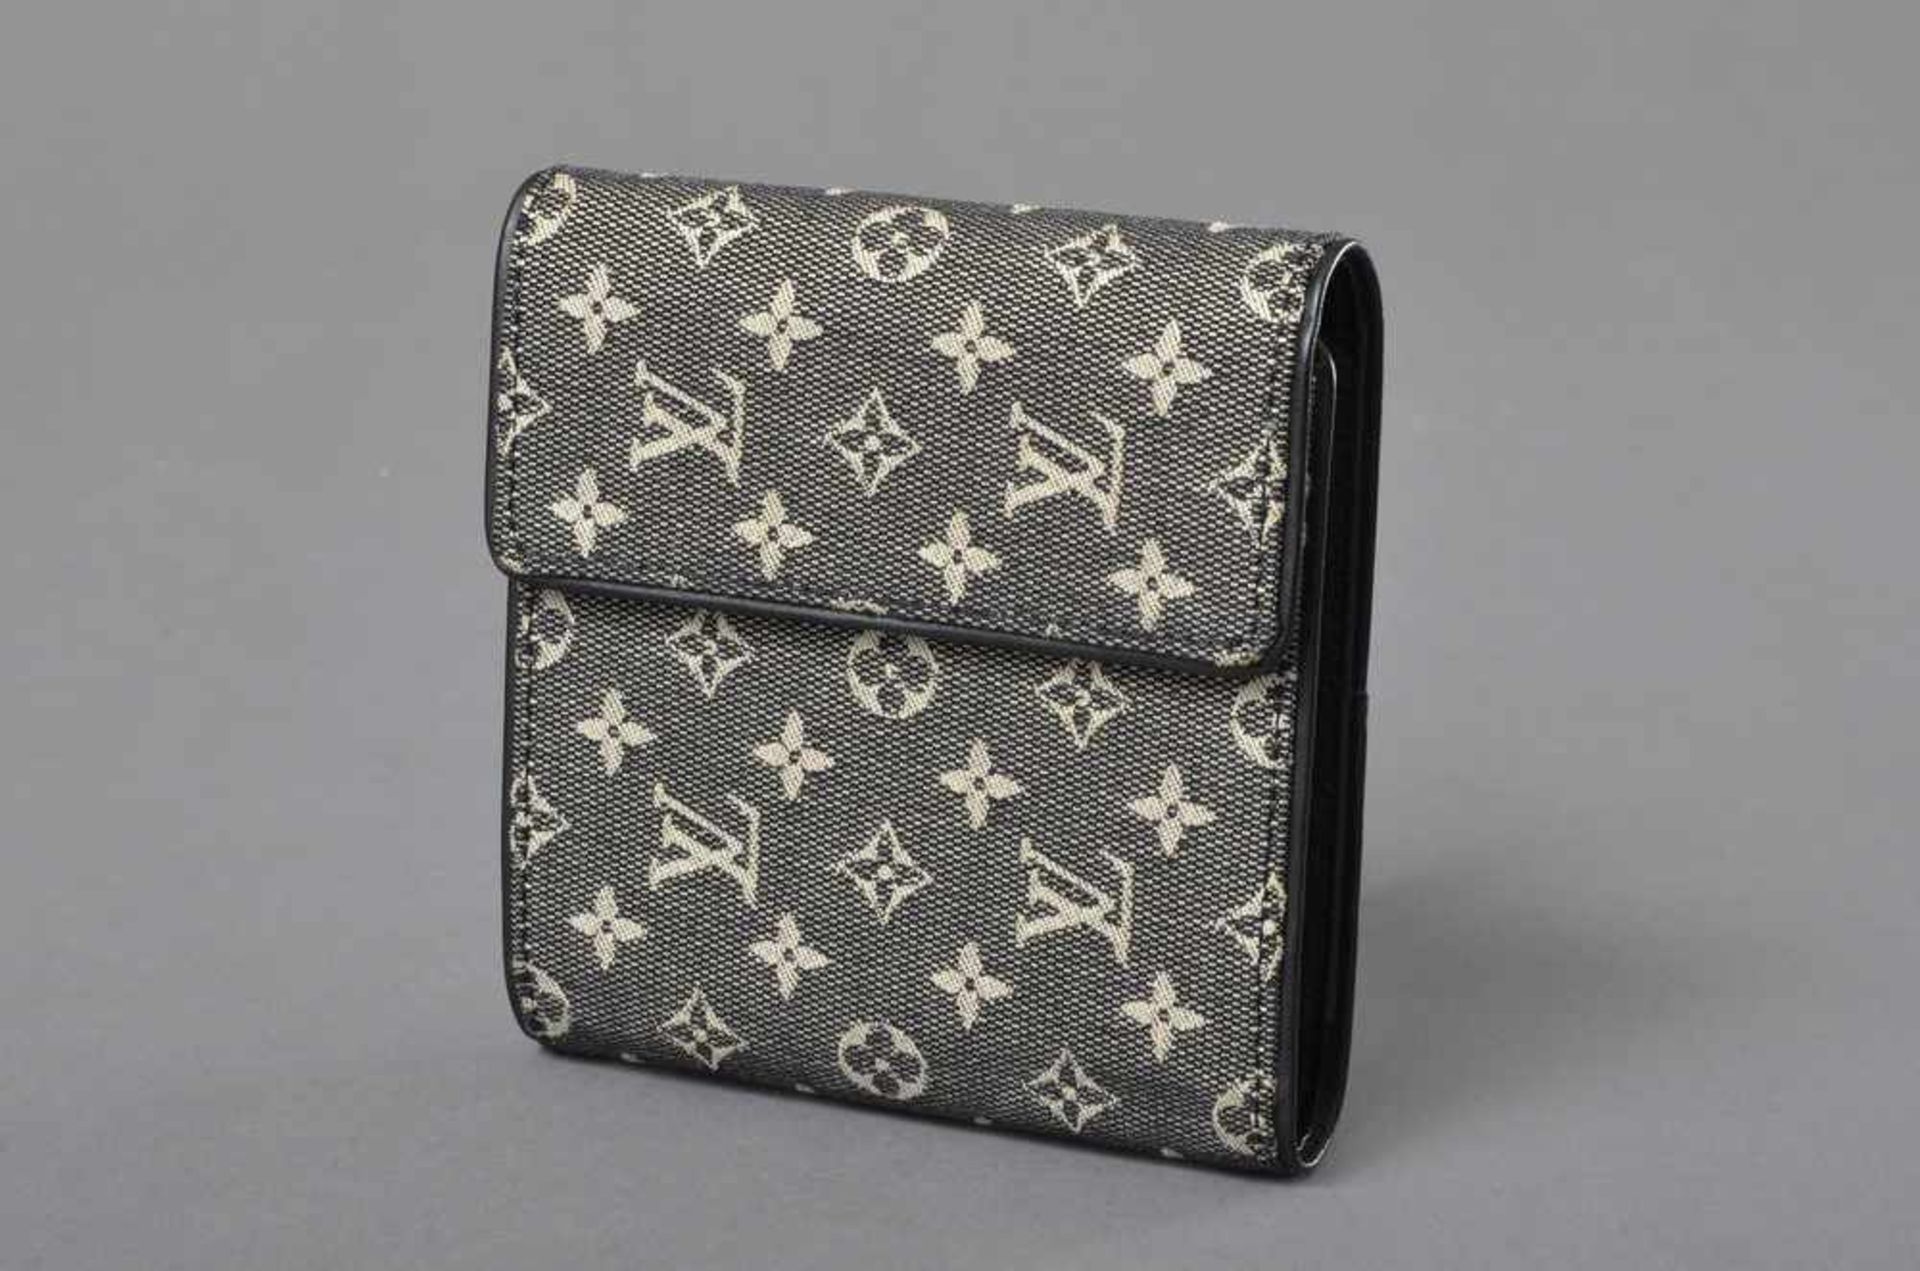 Louis Vuitton Portemonnaie, Monogram Lin schwarz/weiß, Nr. TH 0065, 11x12cm, neu